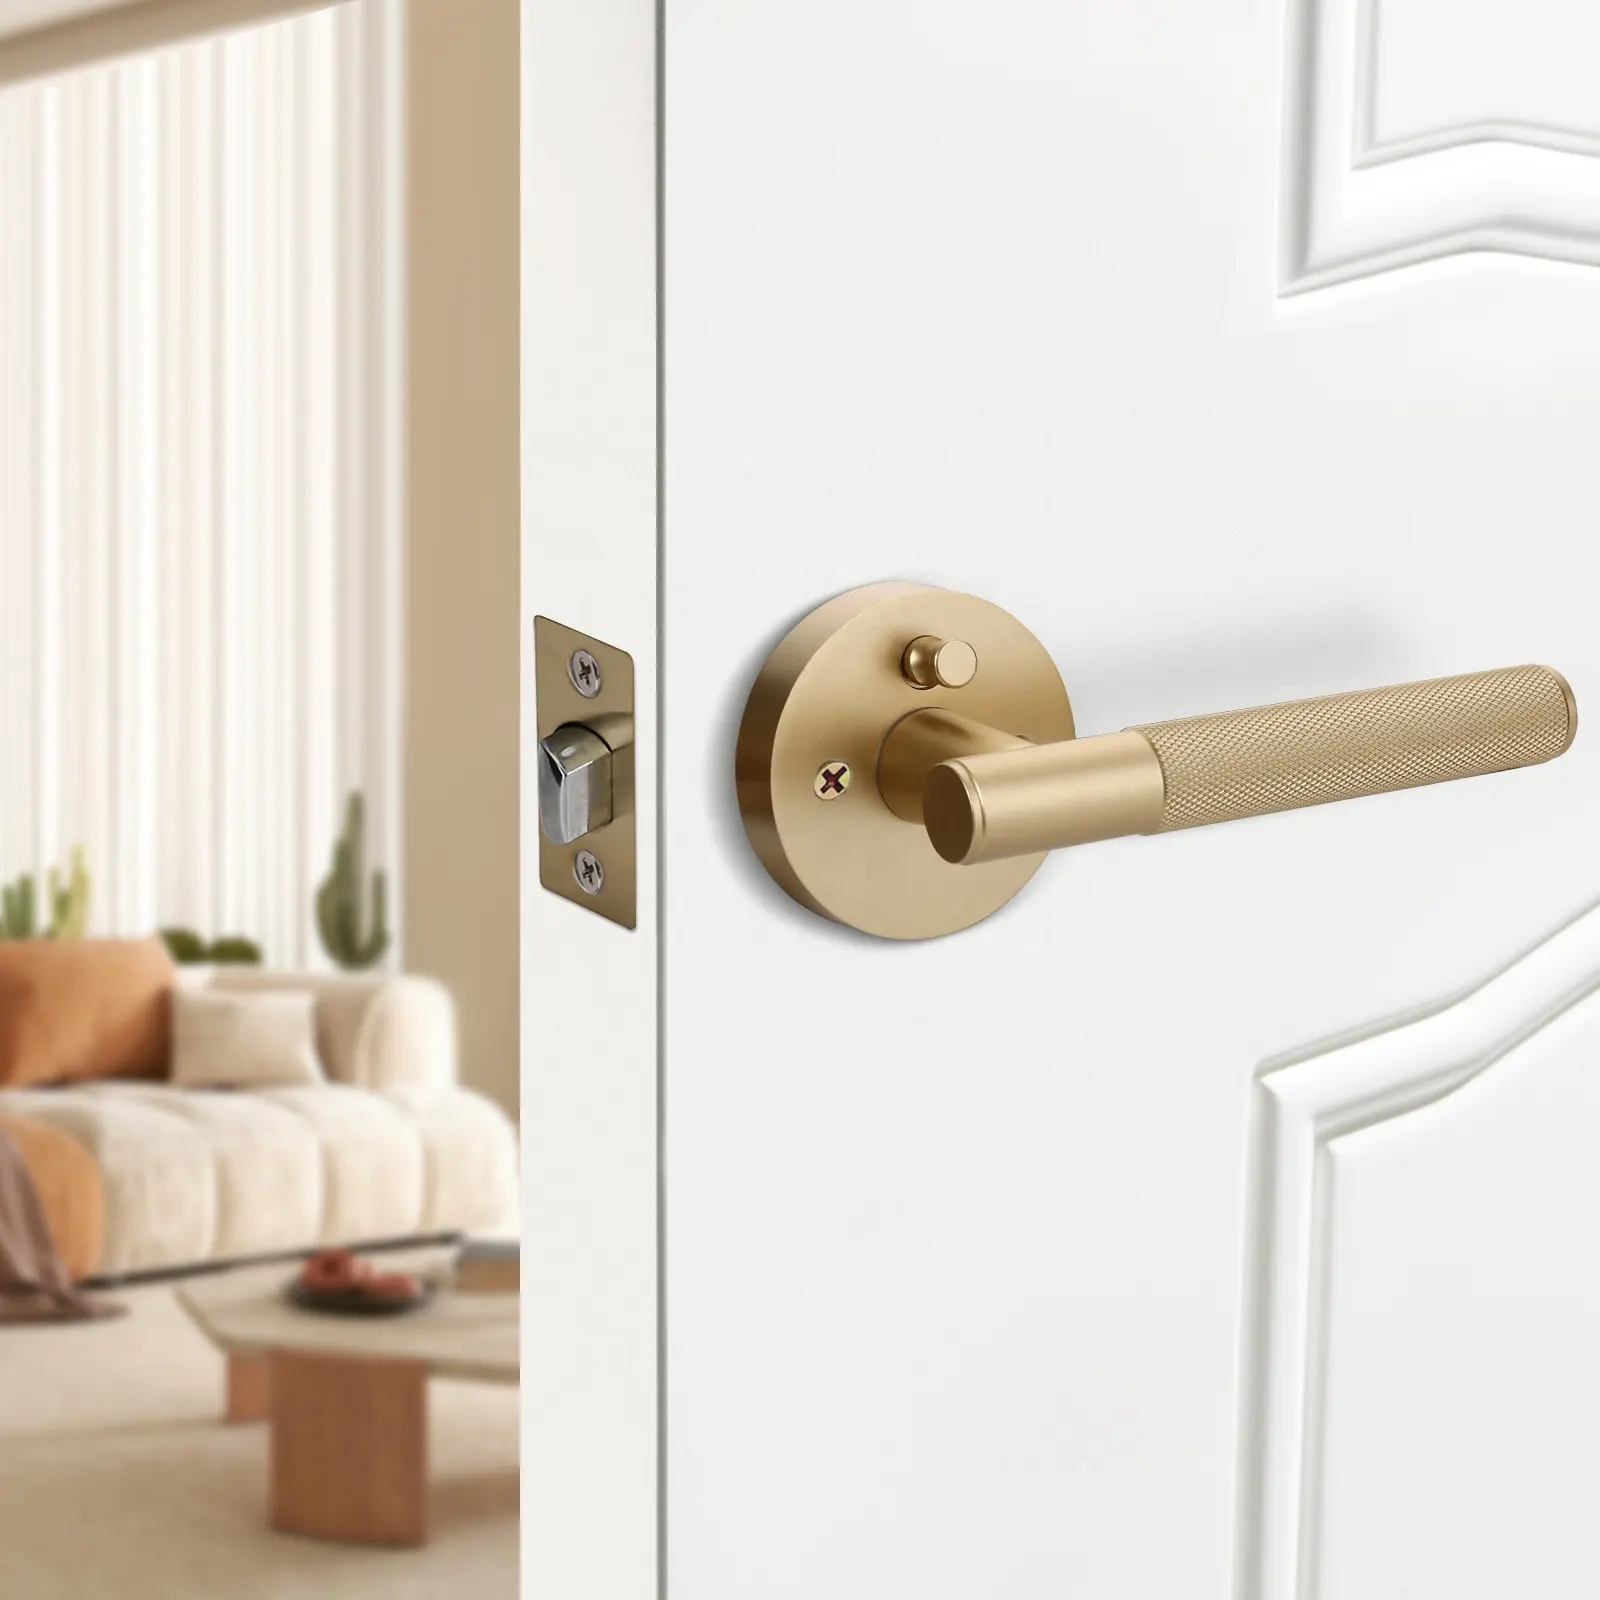 Maçaneta de porta interior em ouro fosco pintada americana com fechadura de privacidade para interiores de casas de luxo